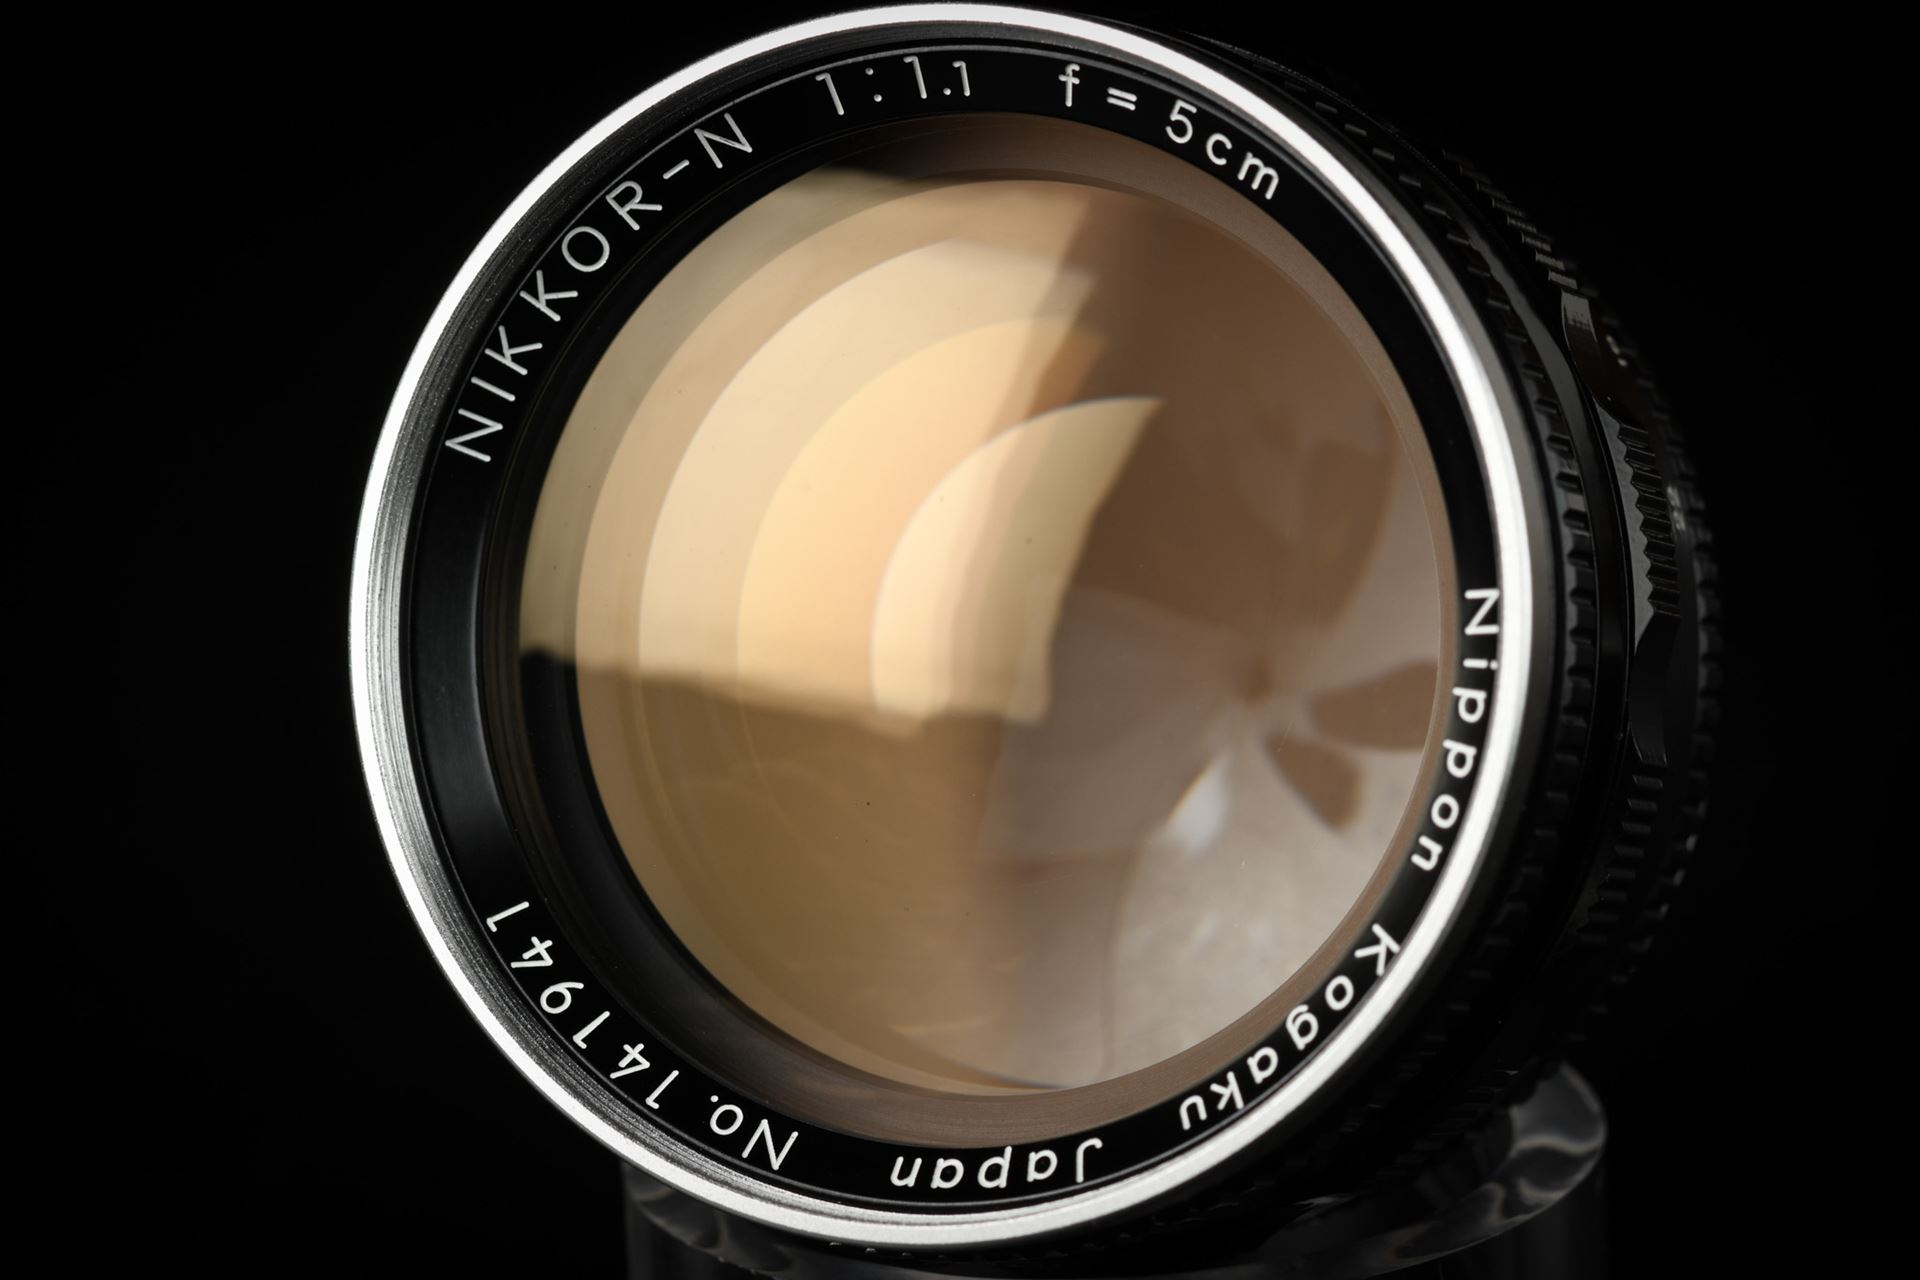 Picture of Nikon Nikkor-N 50mm f/1.1 External